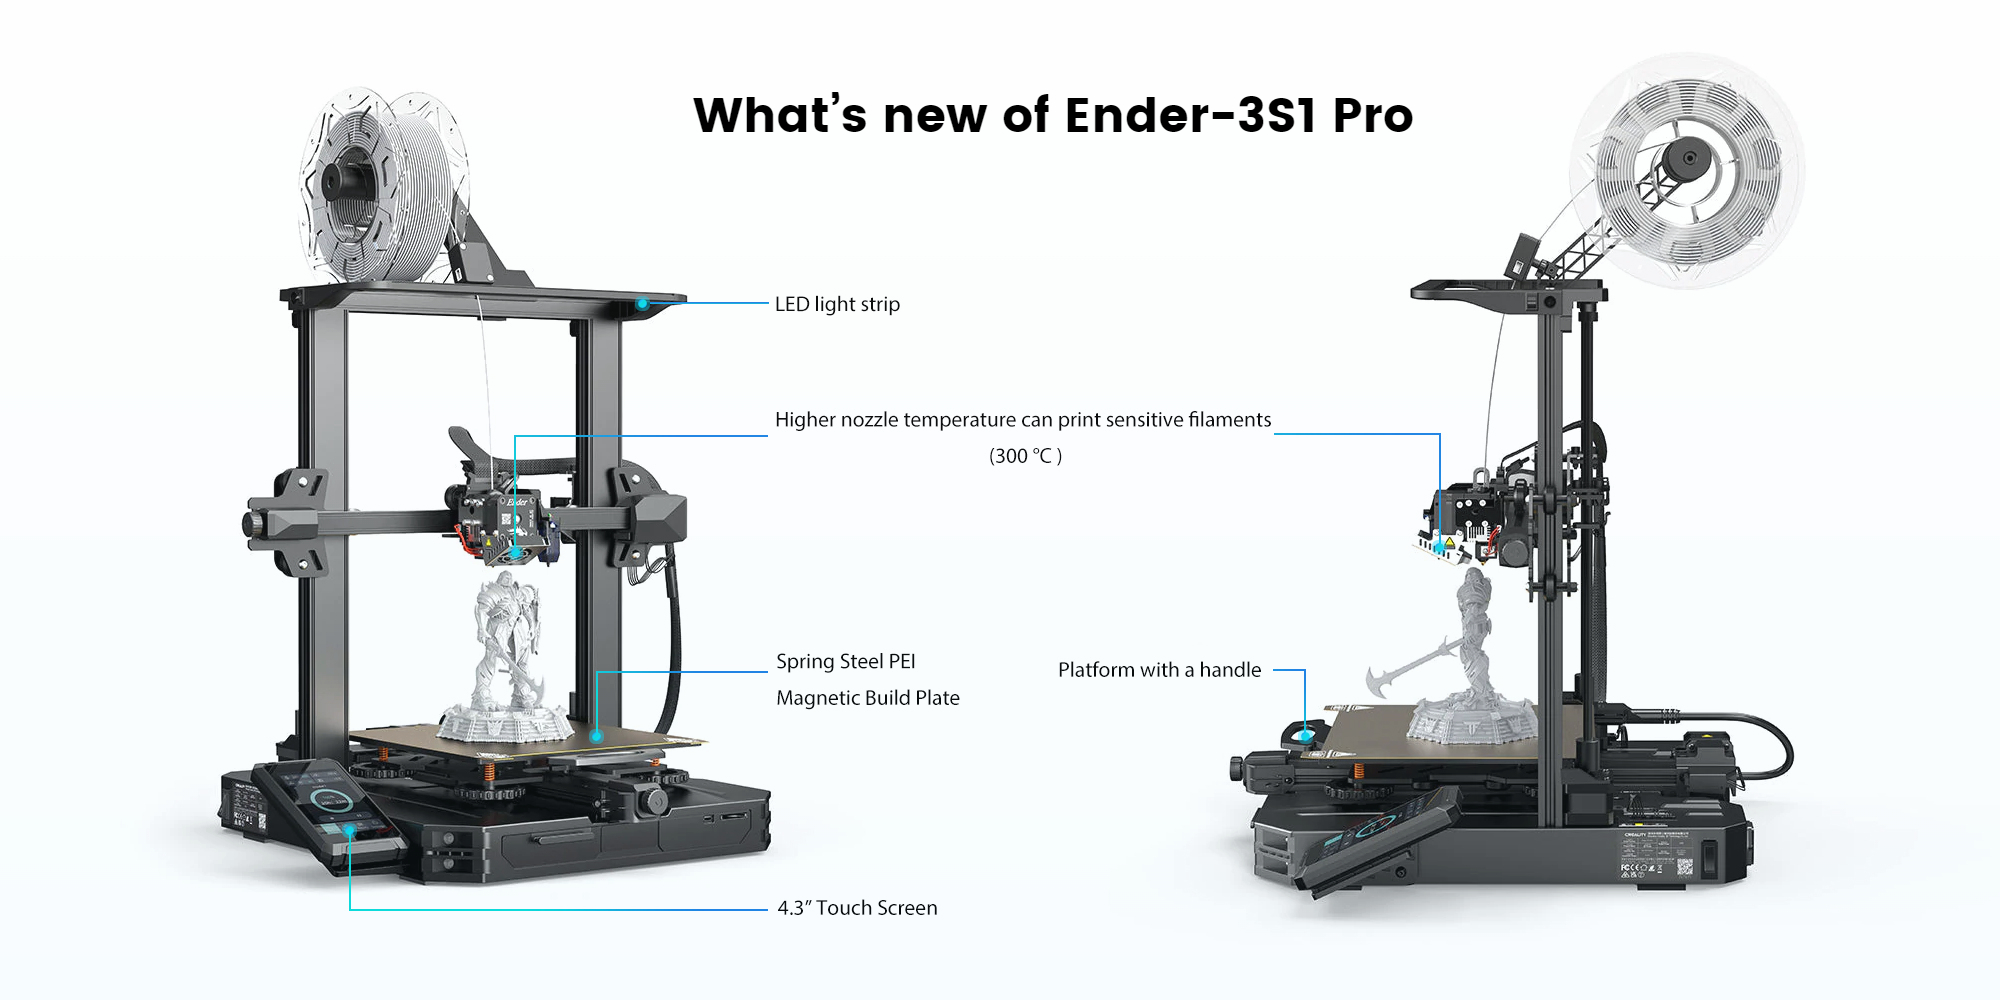 Creality Ender 3 Full Review - Best $200 3D Printer! 